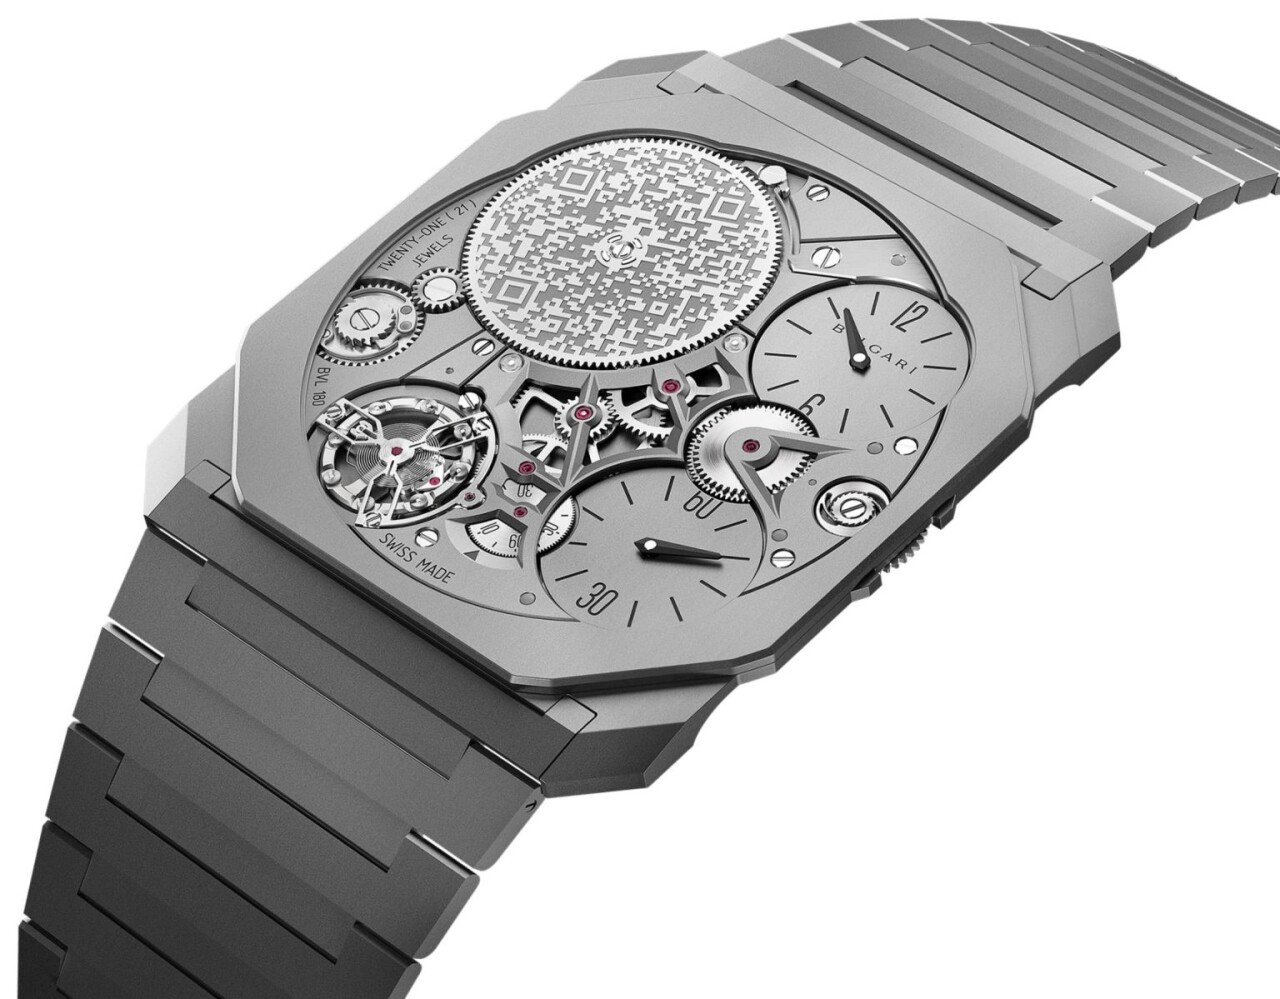 세계에서 가장 얇은 시계 Bulgari Octo Finissimo Ultra watch_05.jpg 세계에서 가장 얇은 시계.jpg